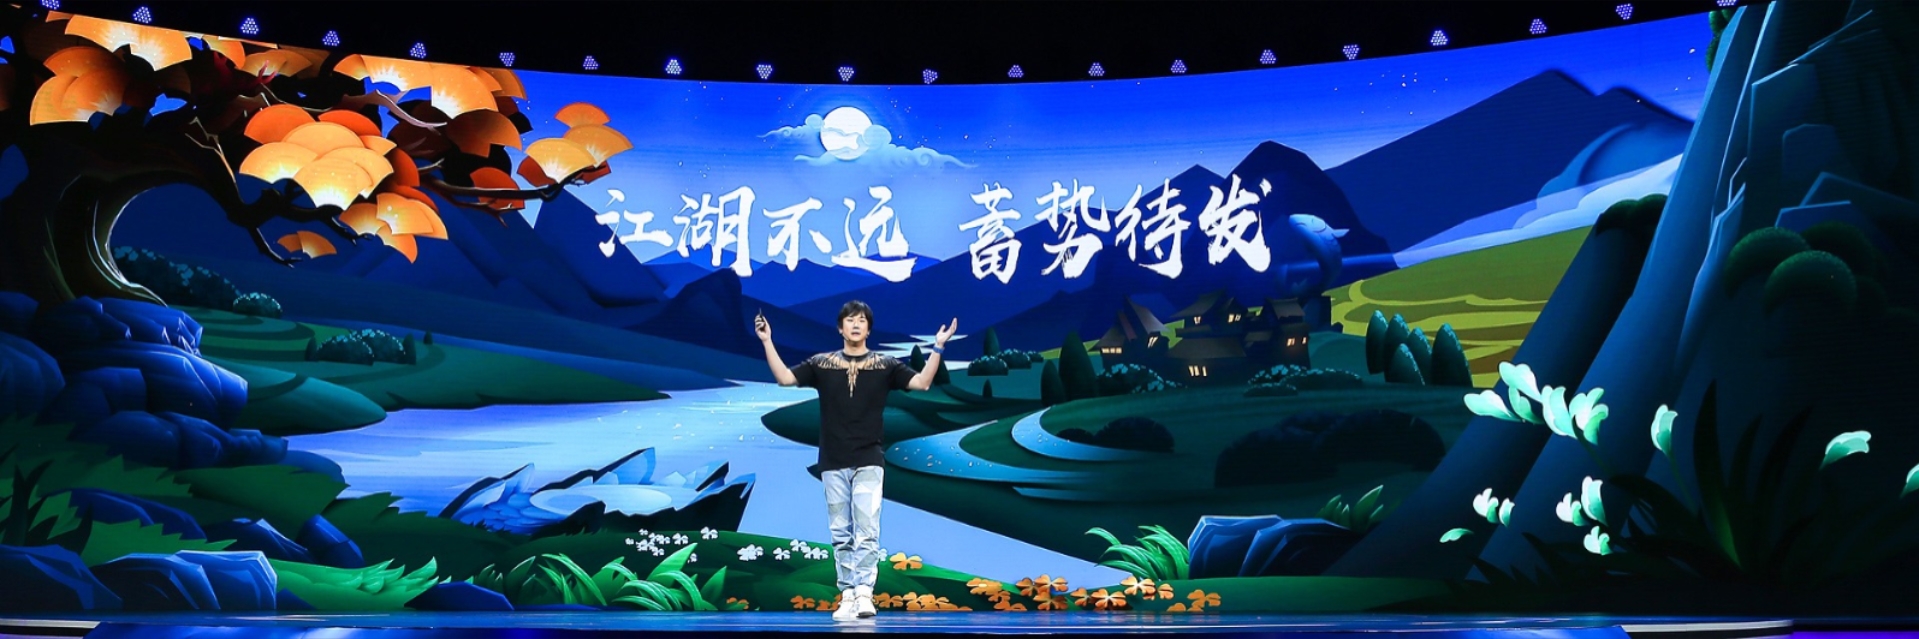 《剑网3：指尖江湖》亮相2019UP 第二季度内全平台正式上线